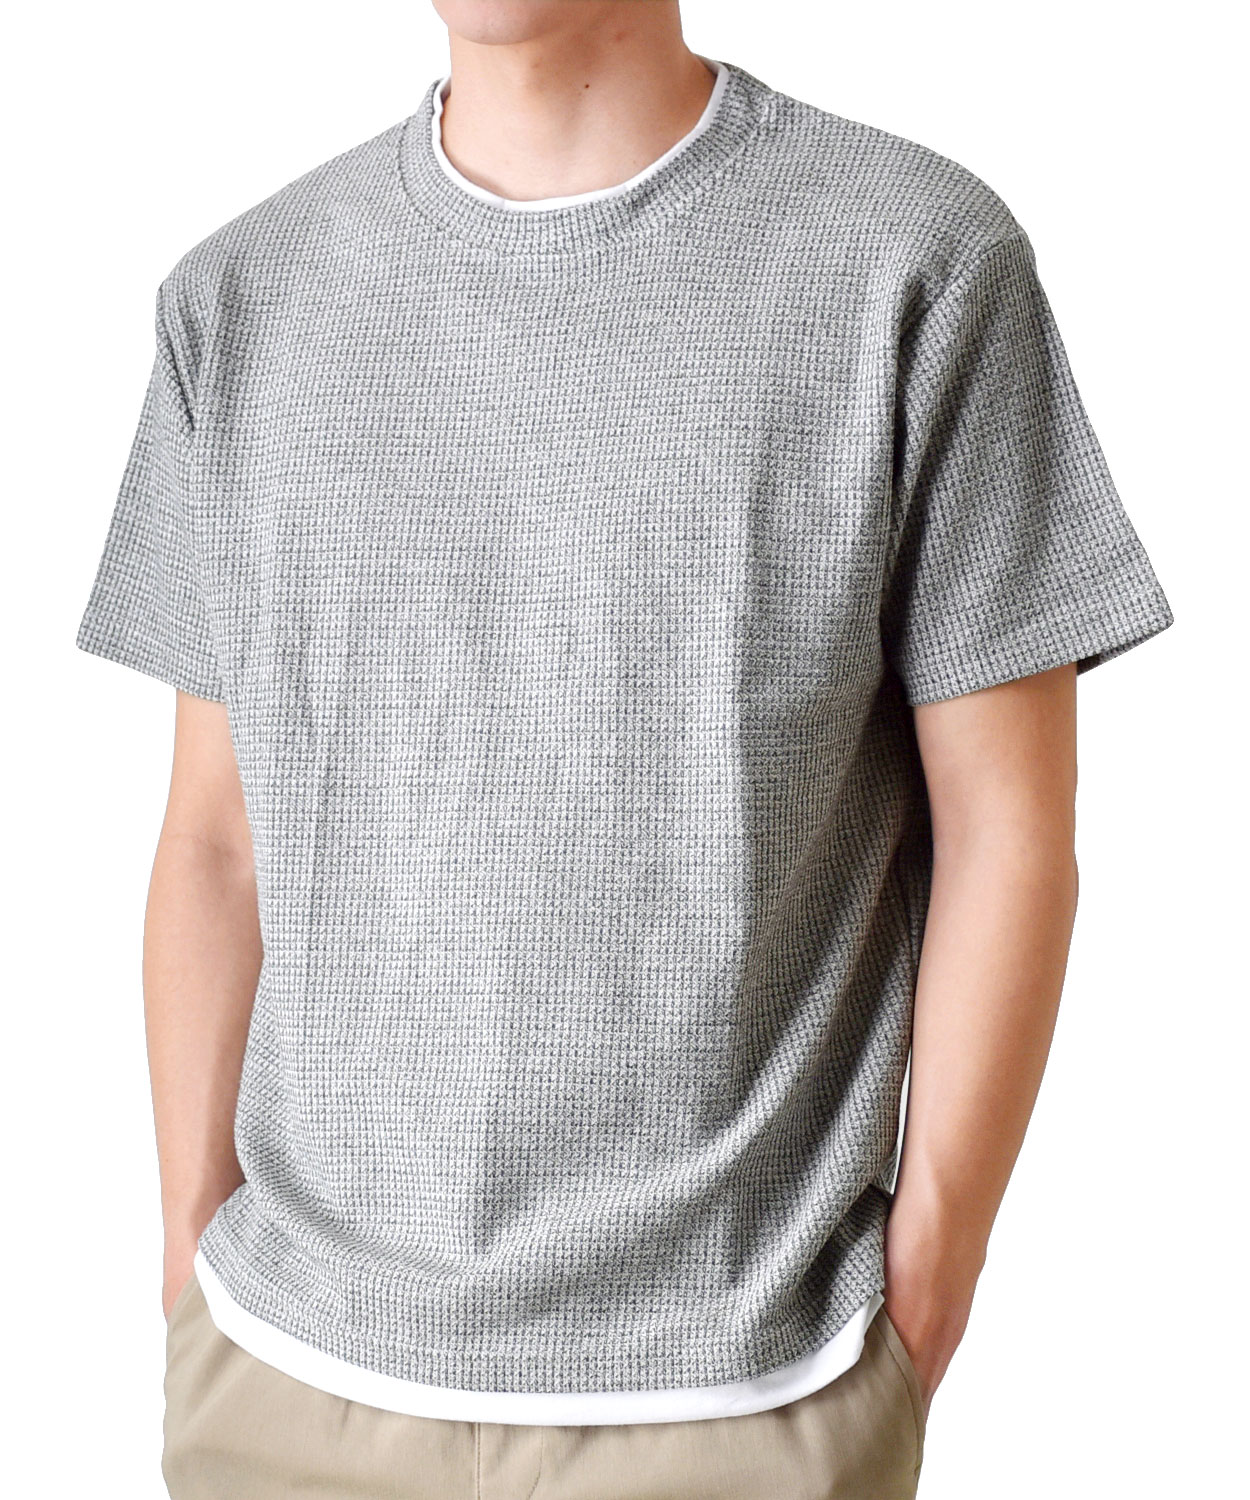 Tシャツ 半袖 メンズ カットソー ミニワッフル フェイクレイヤード 送料無料 通販YC